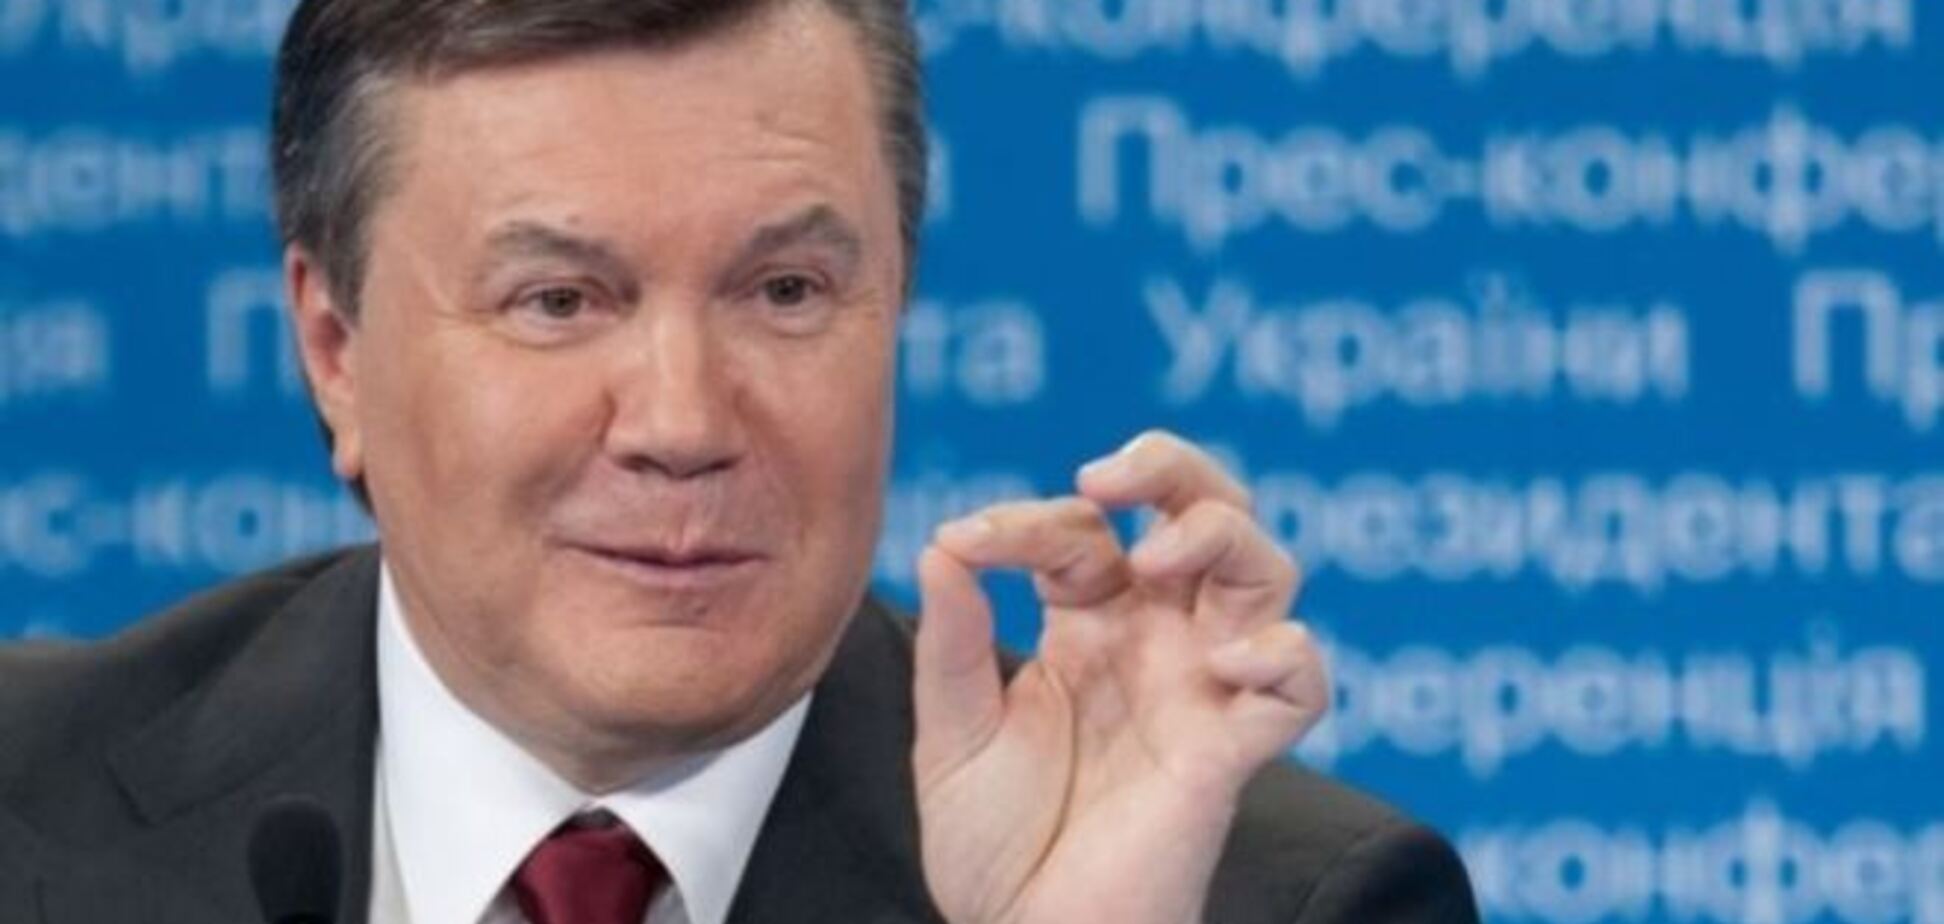 ЕС из-за отсутствия доказательств снимет санкции с четырех соратников Януковича - СМИ